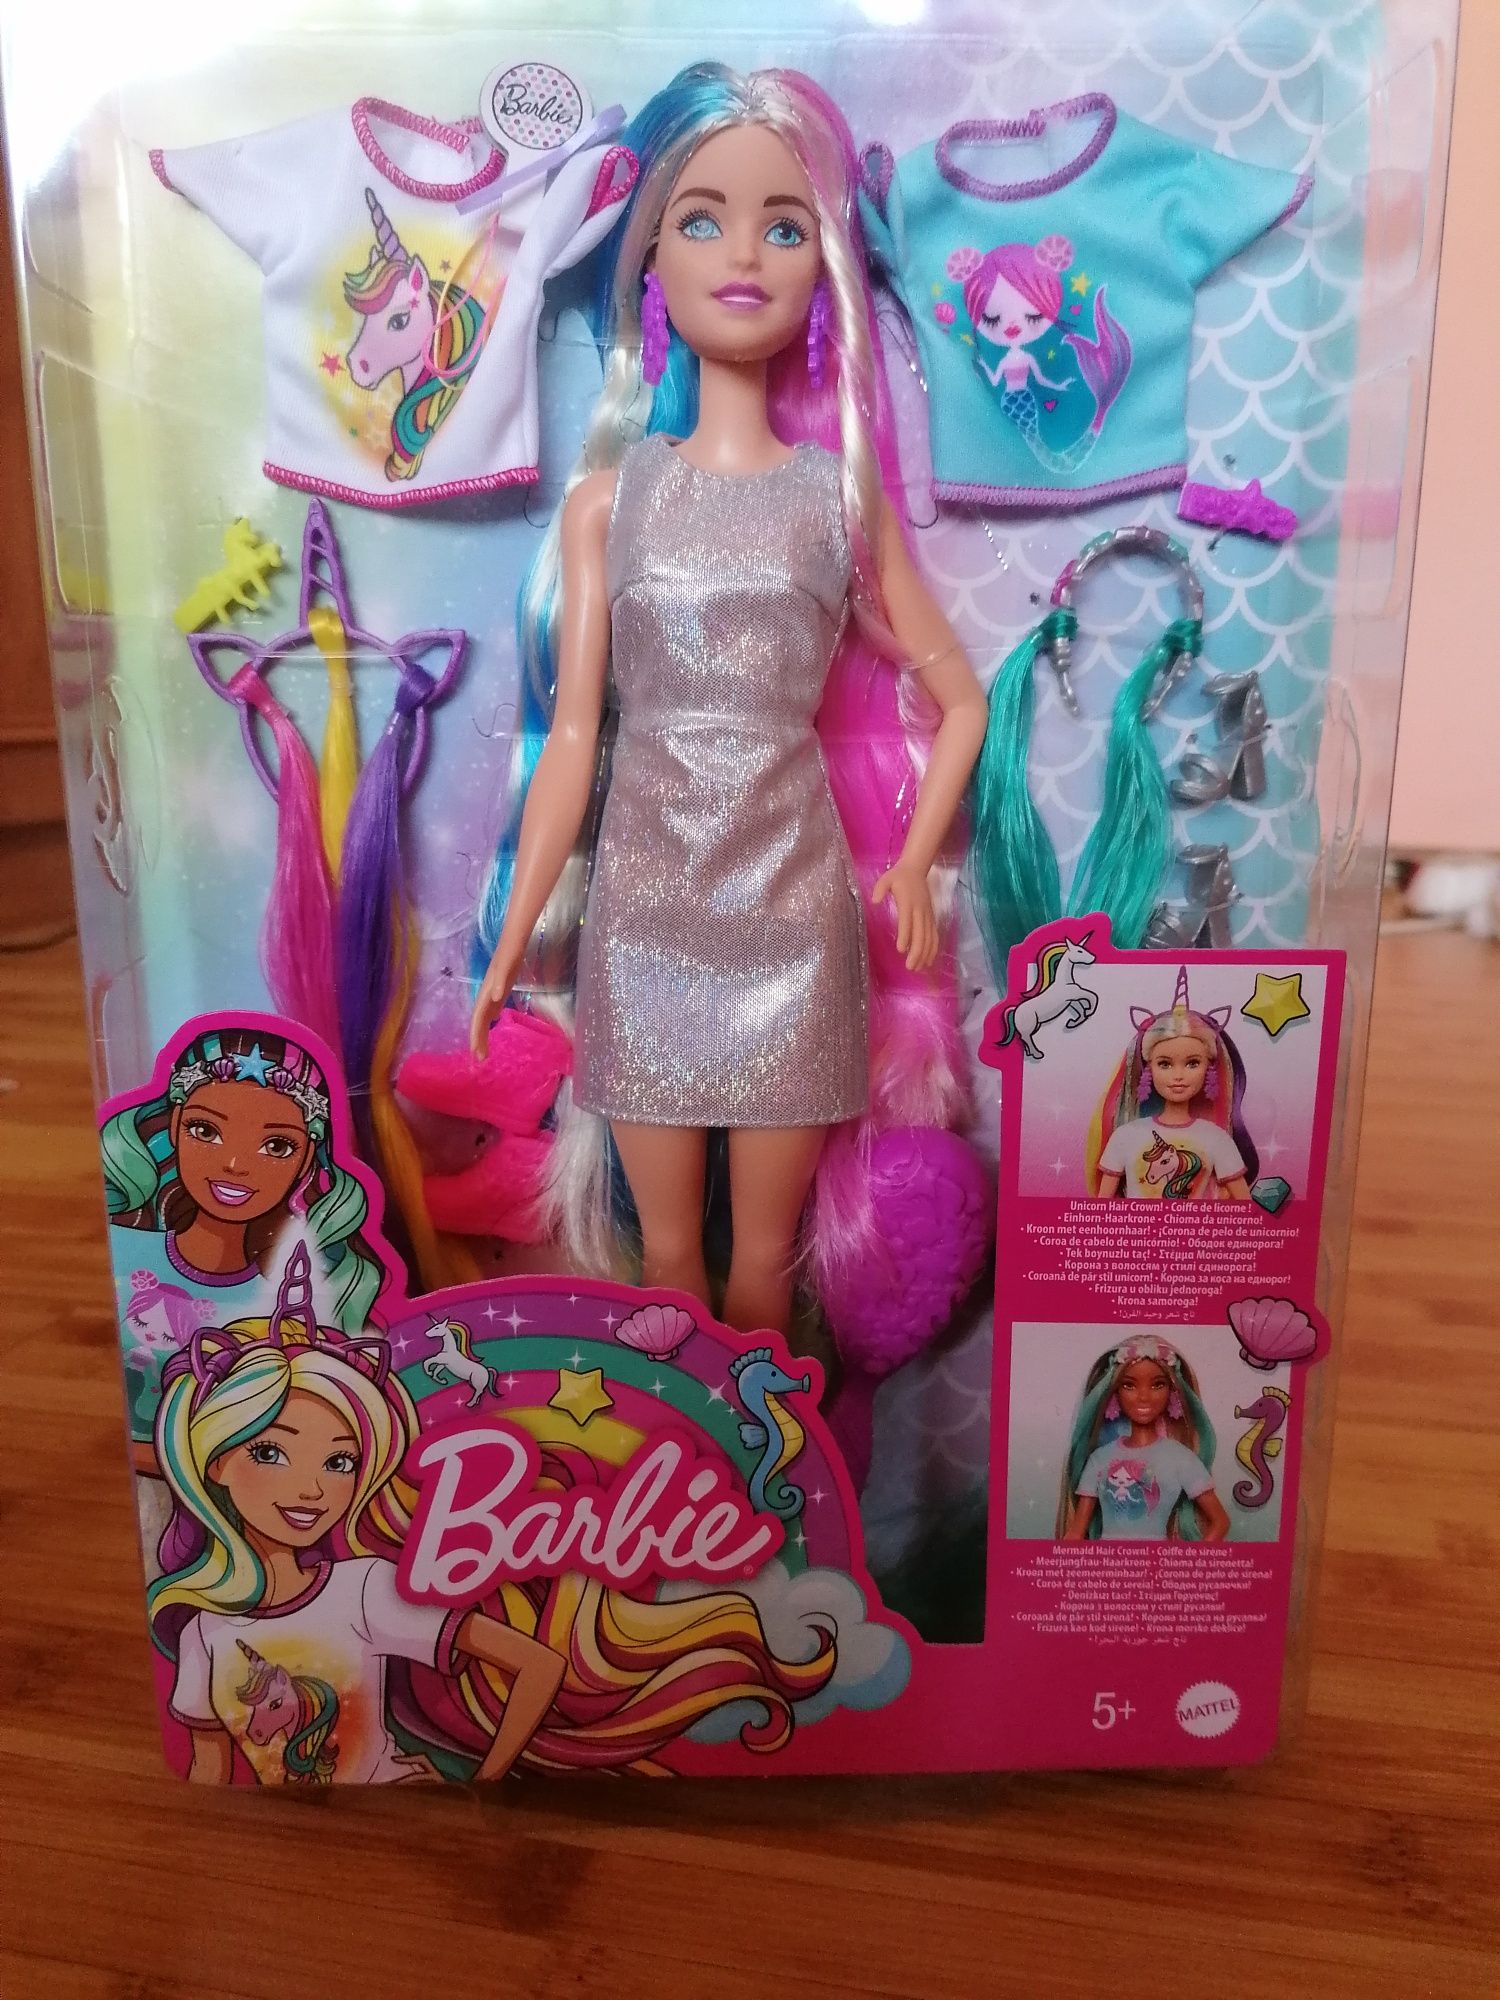 Vând păpuși Barbie